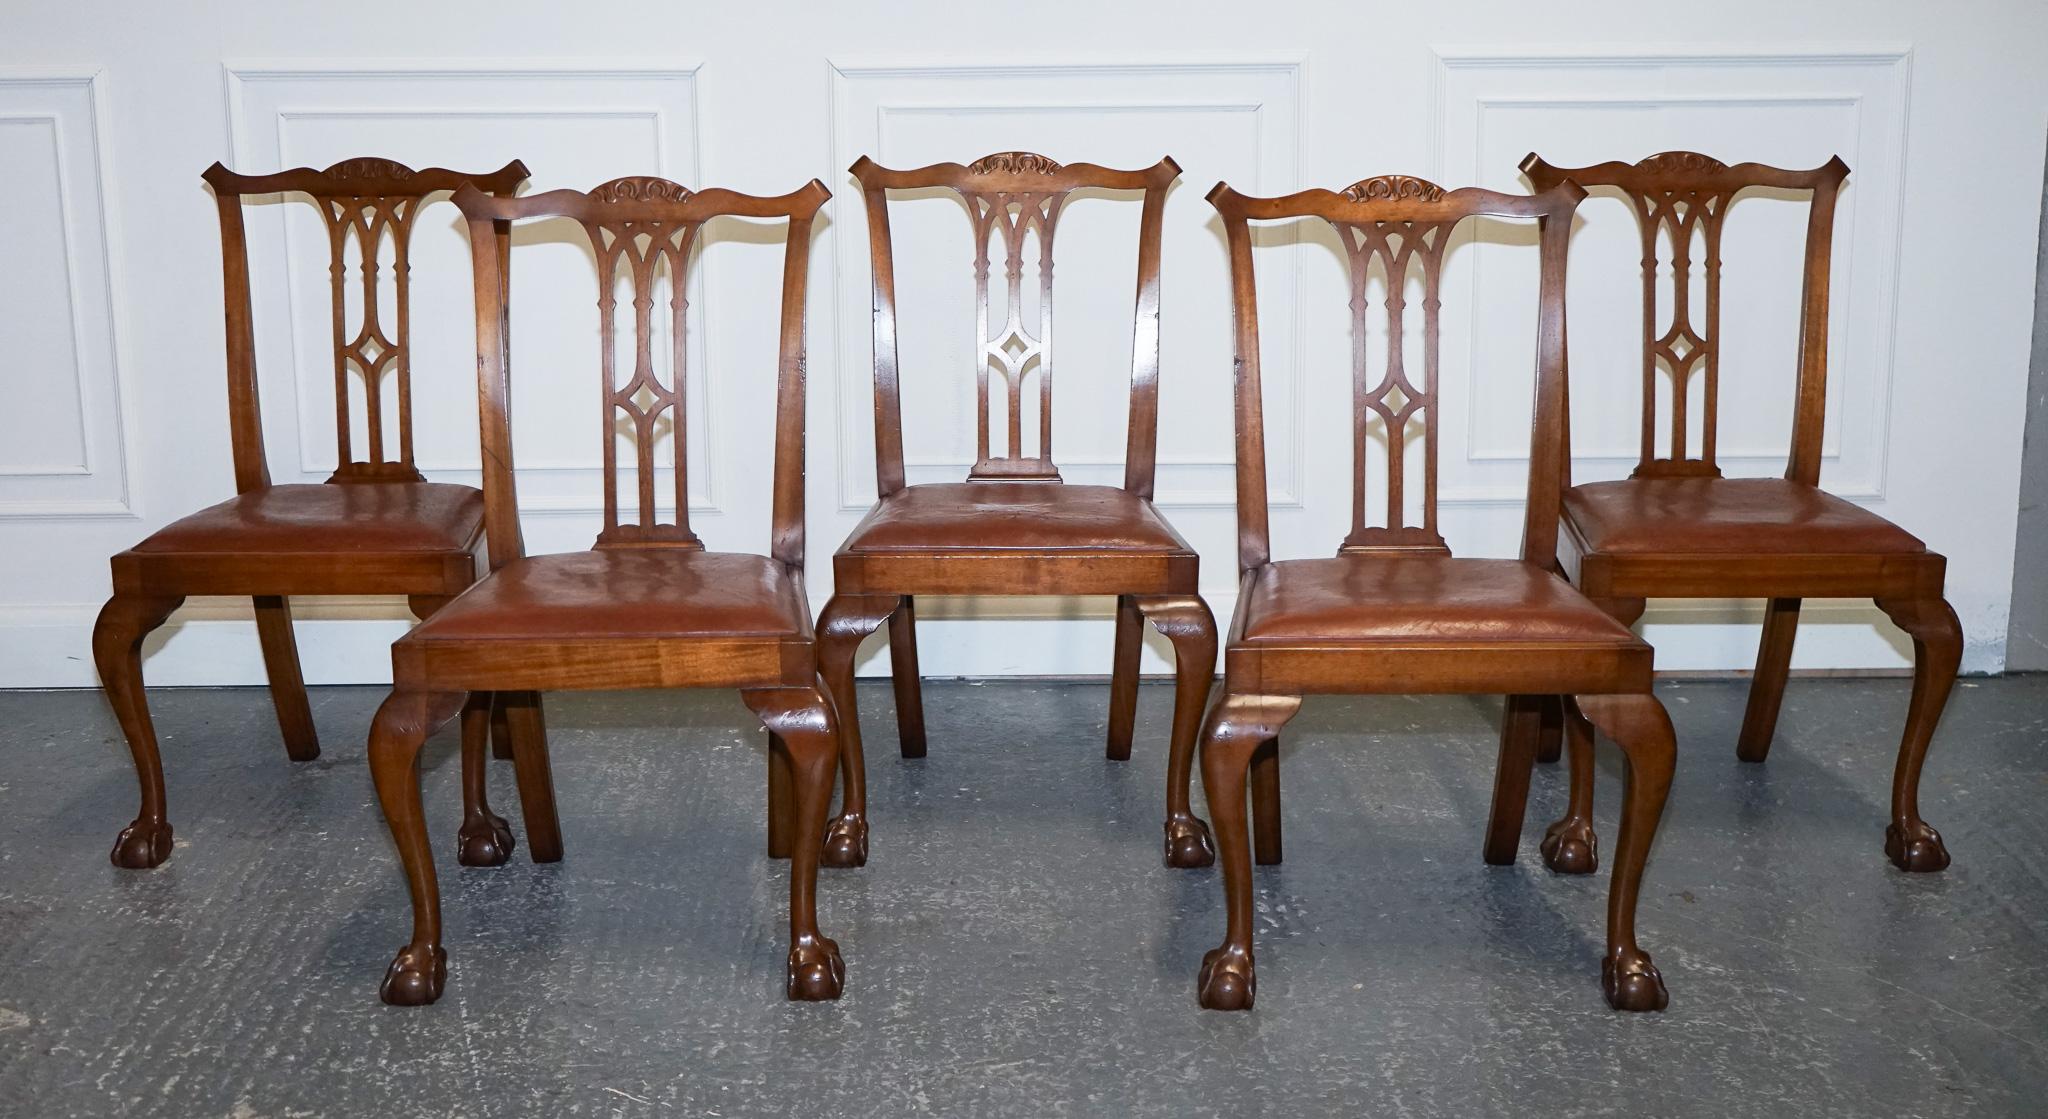 
Nous sommes ravis d'offrir à la vente ce magnifique ensemble de 5 chaises de salle à manger de style Chippendale. 

Un ensemble de chaises de salle à manger de style Eleg avec des sièges en cuir est un choix parfait pour une table ronde, offrant à